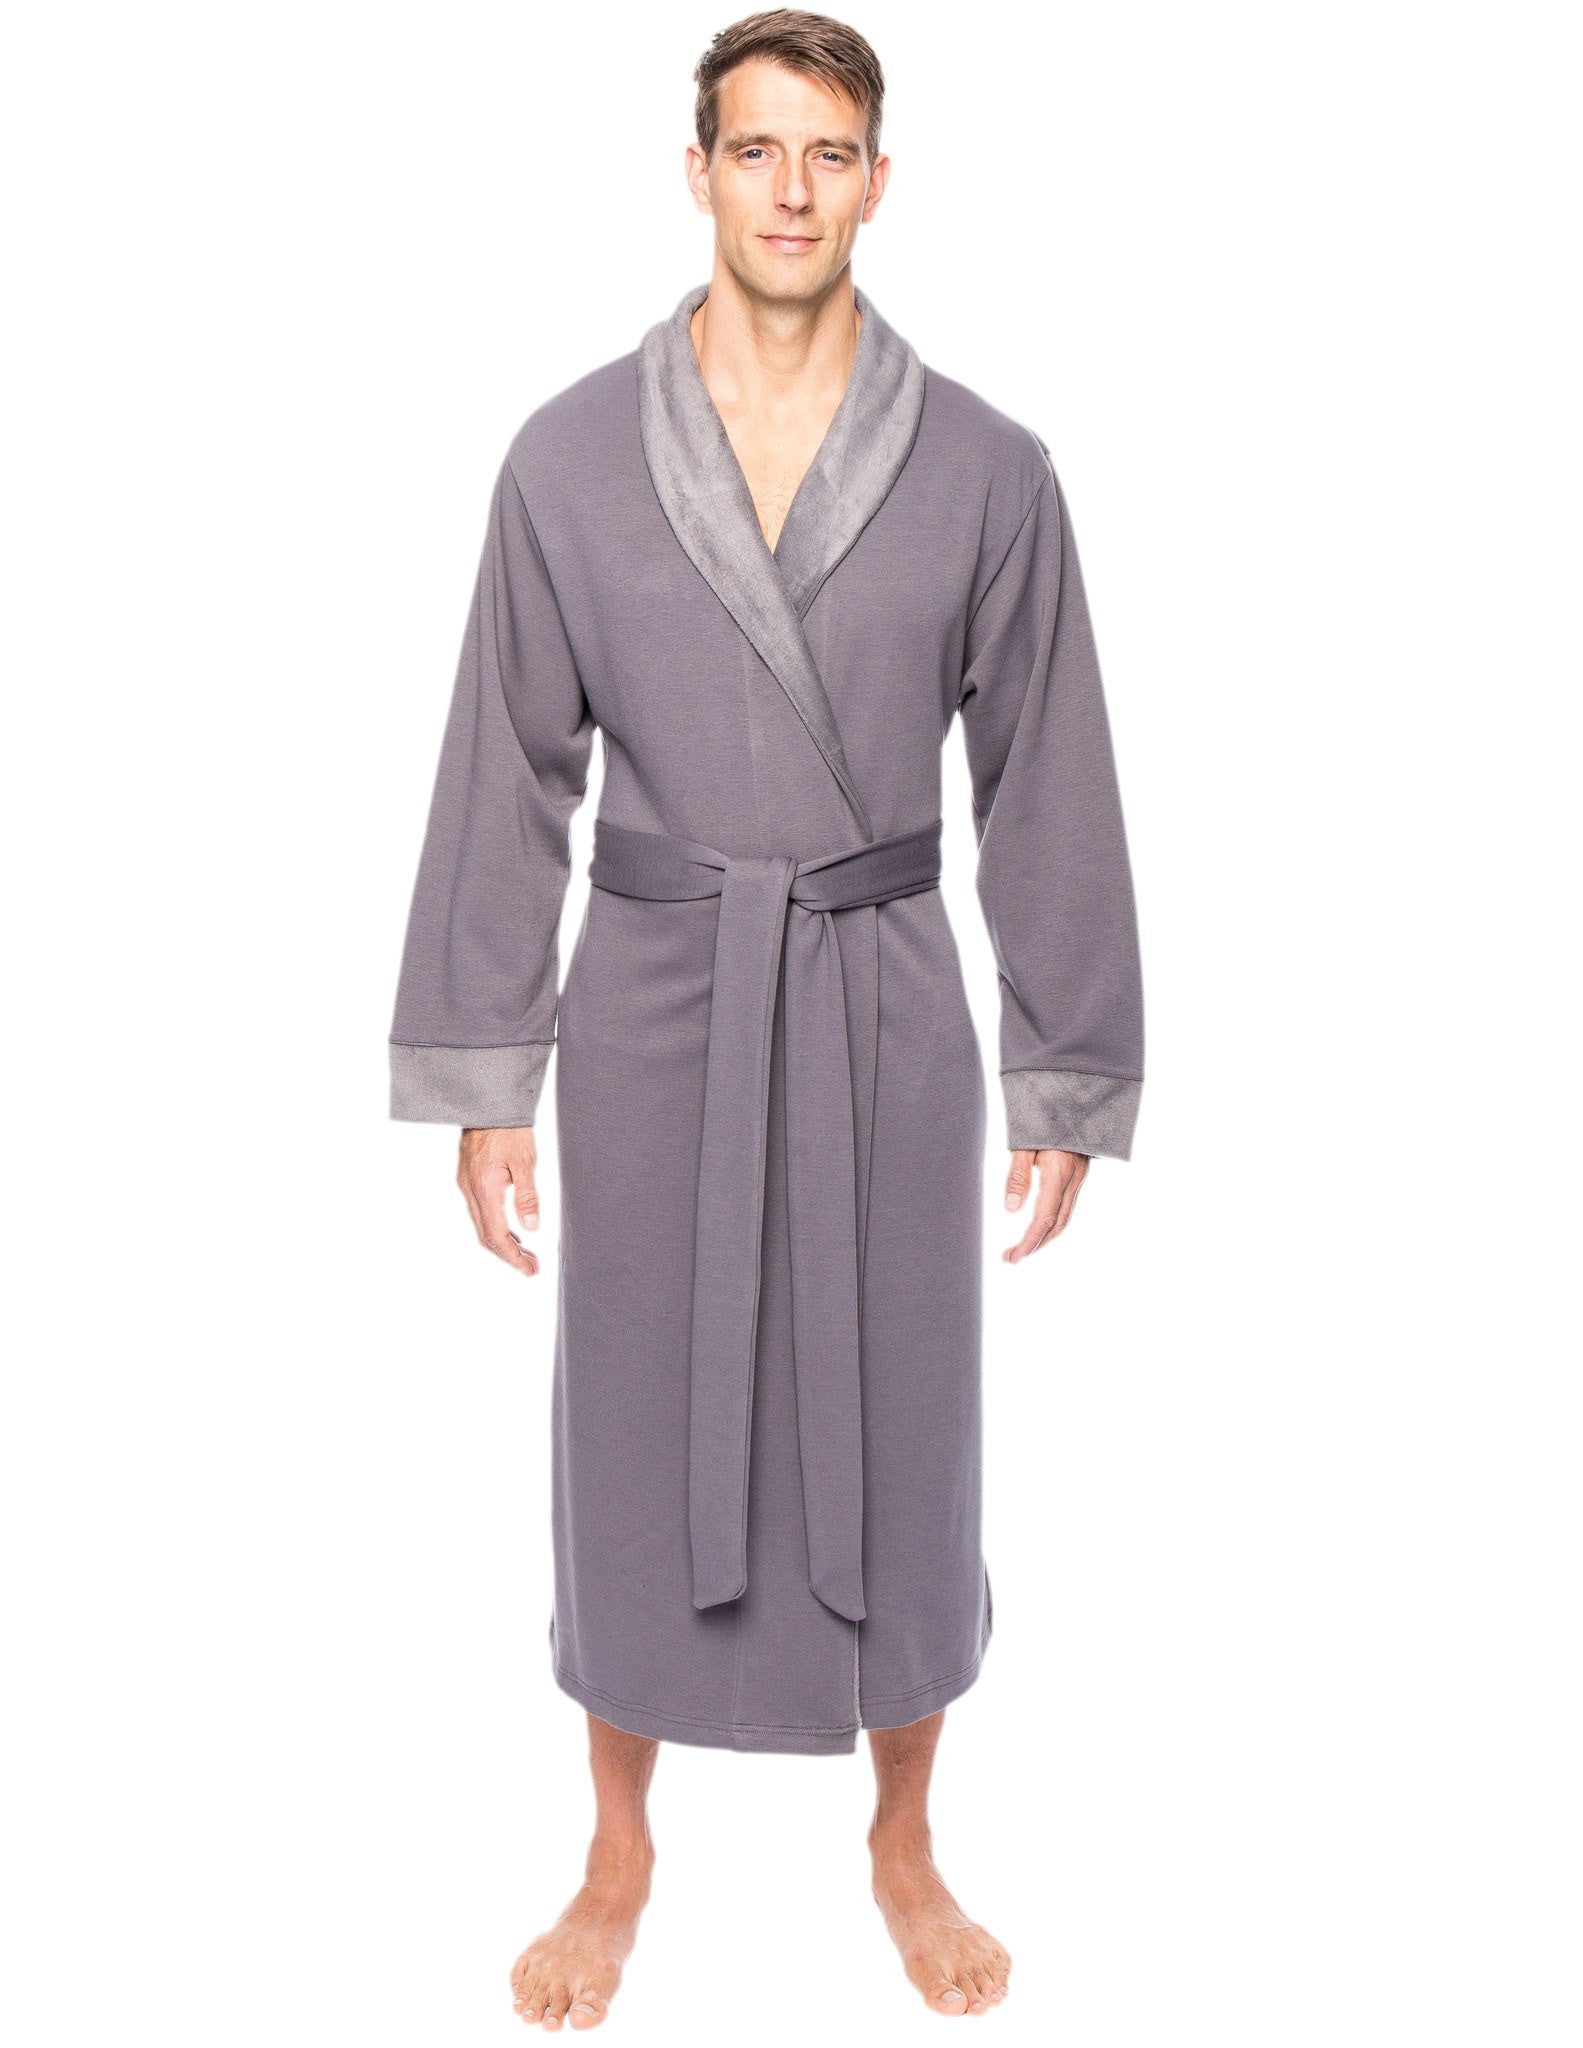 Men's Super Soft Brushed Robe